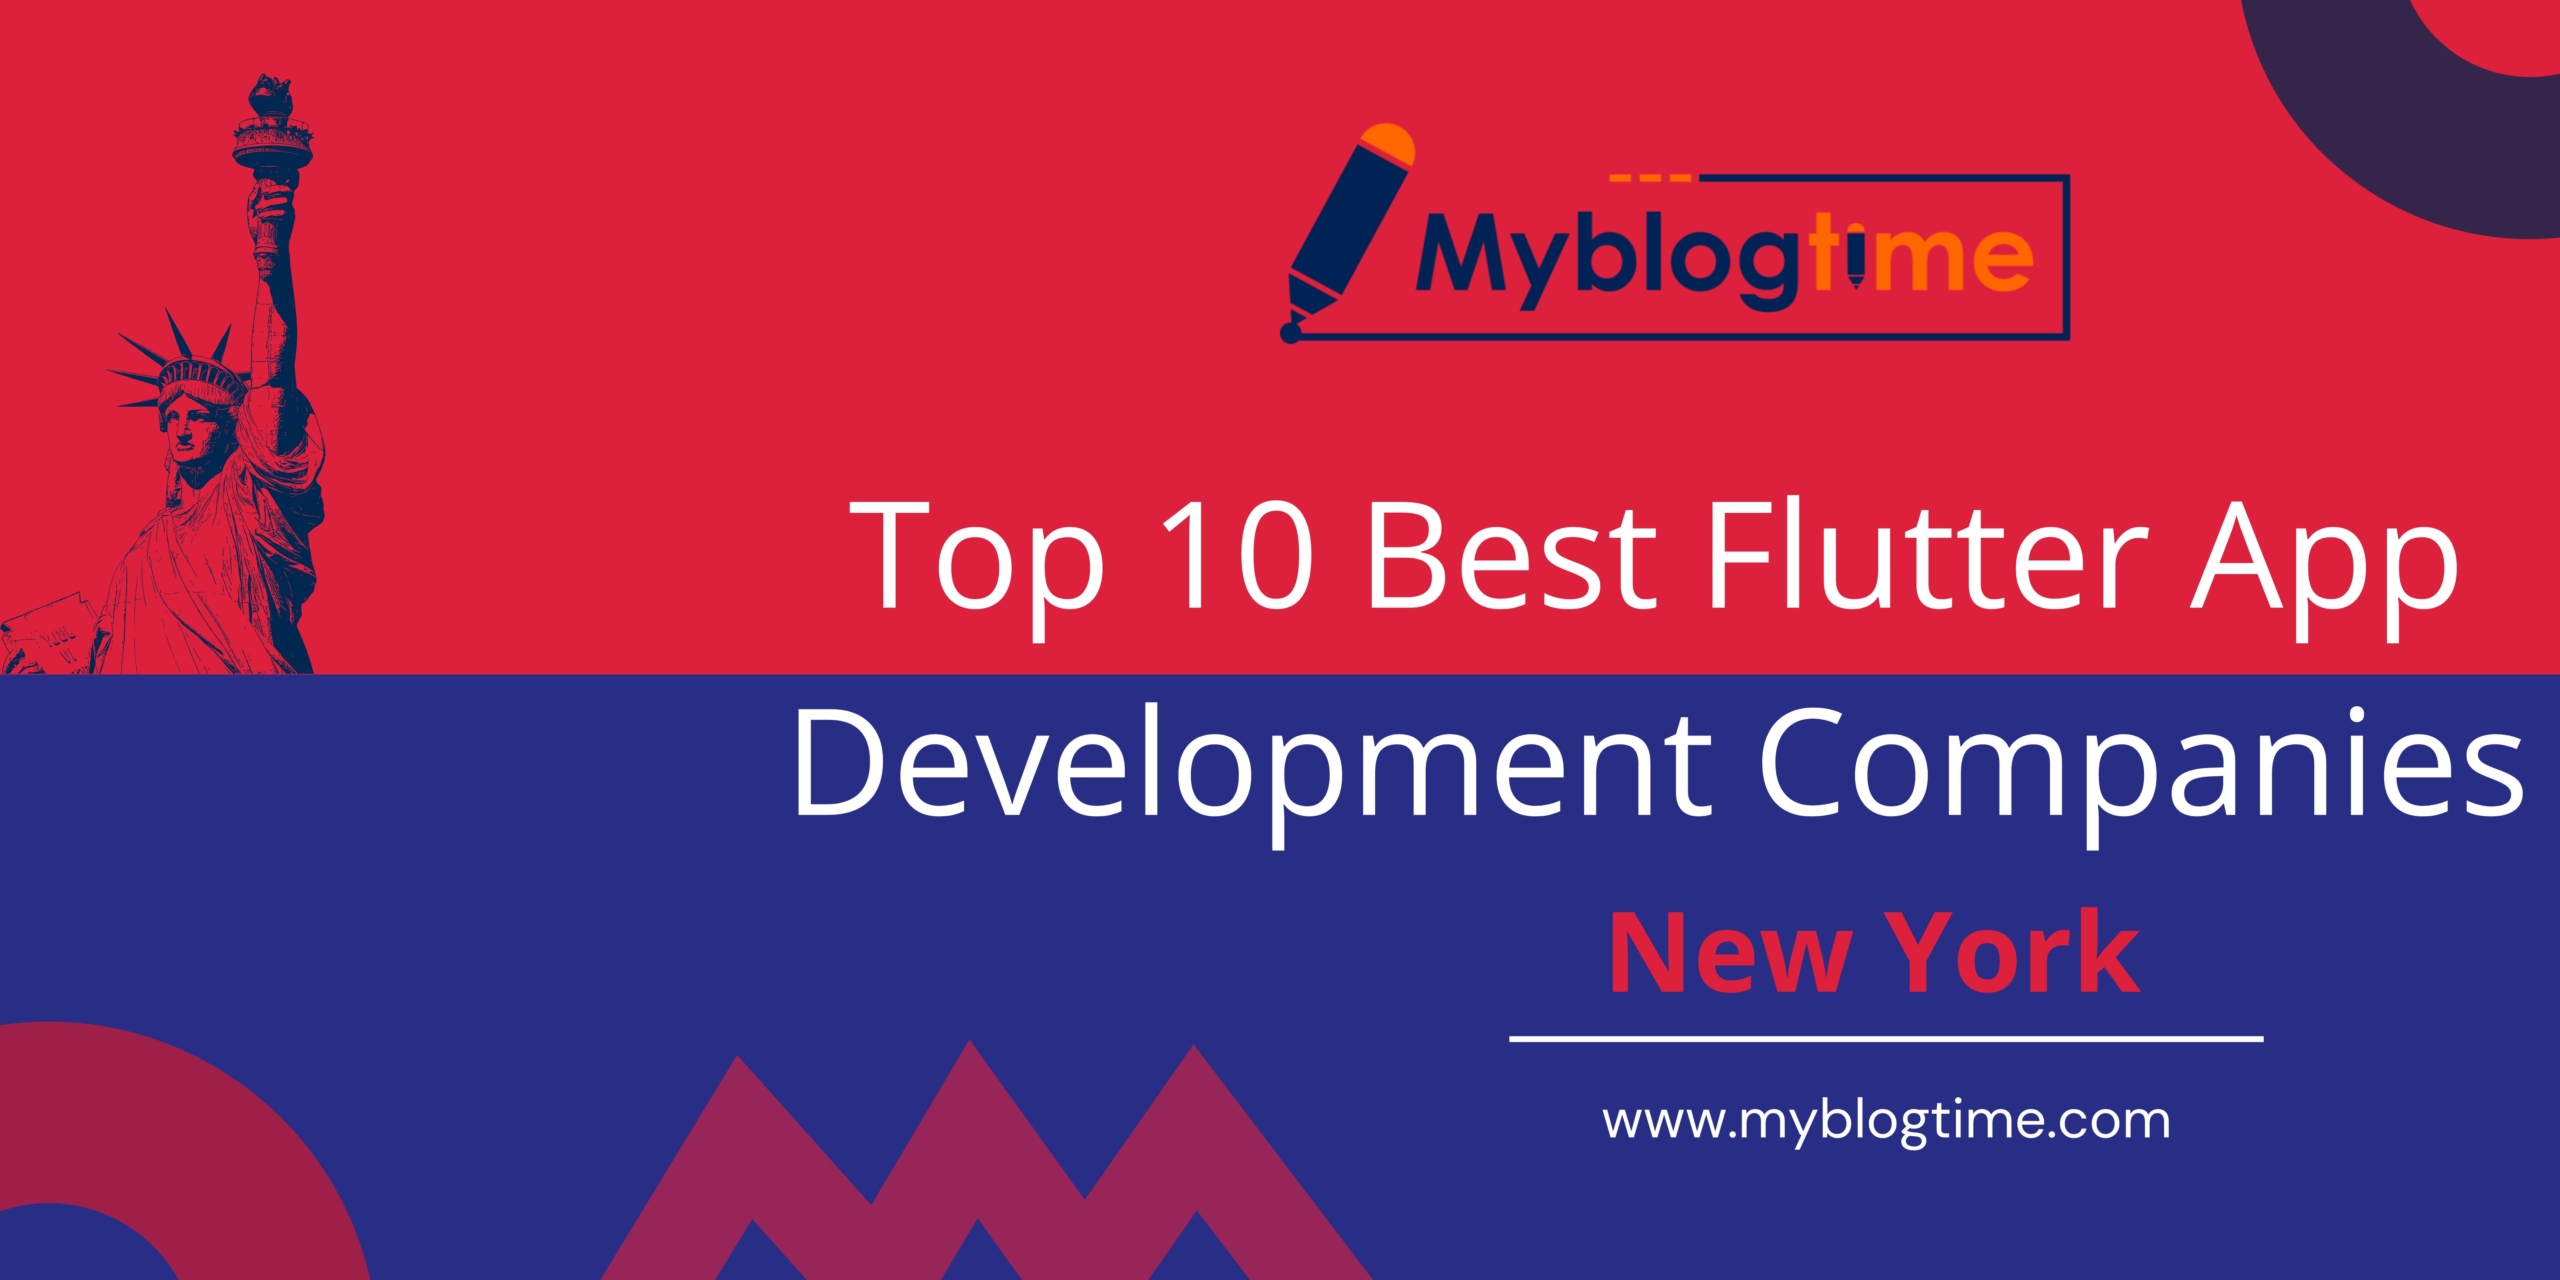 Top 10 Best Flutter App Development Companies New York - My Blog Time